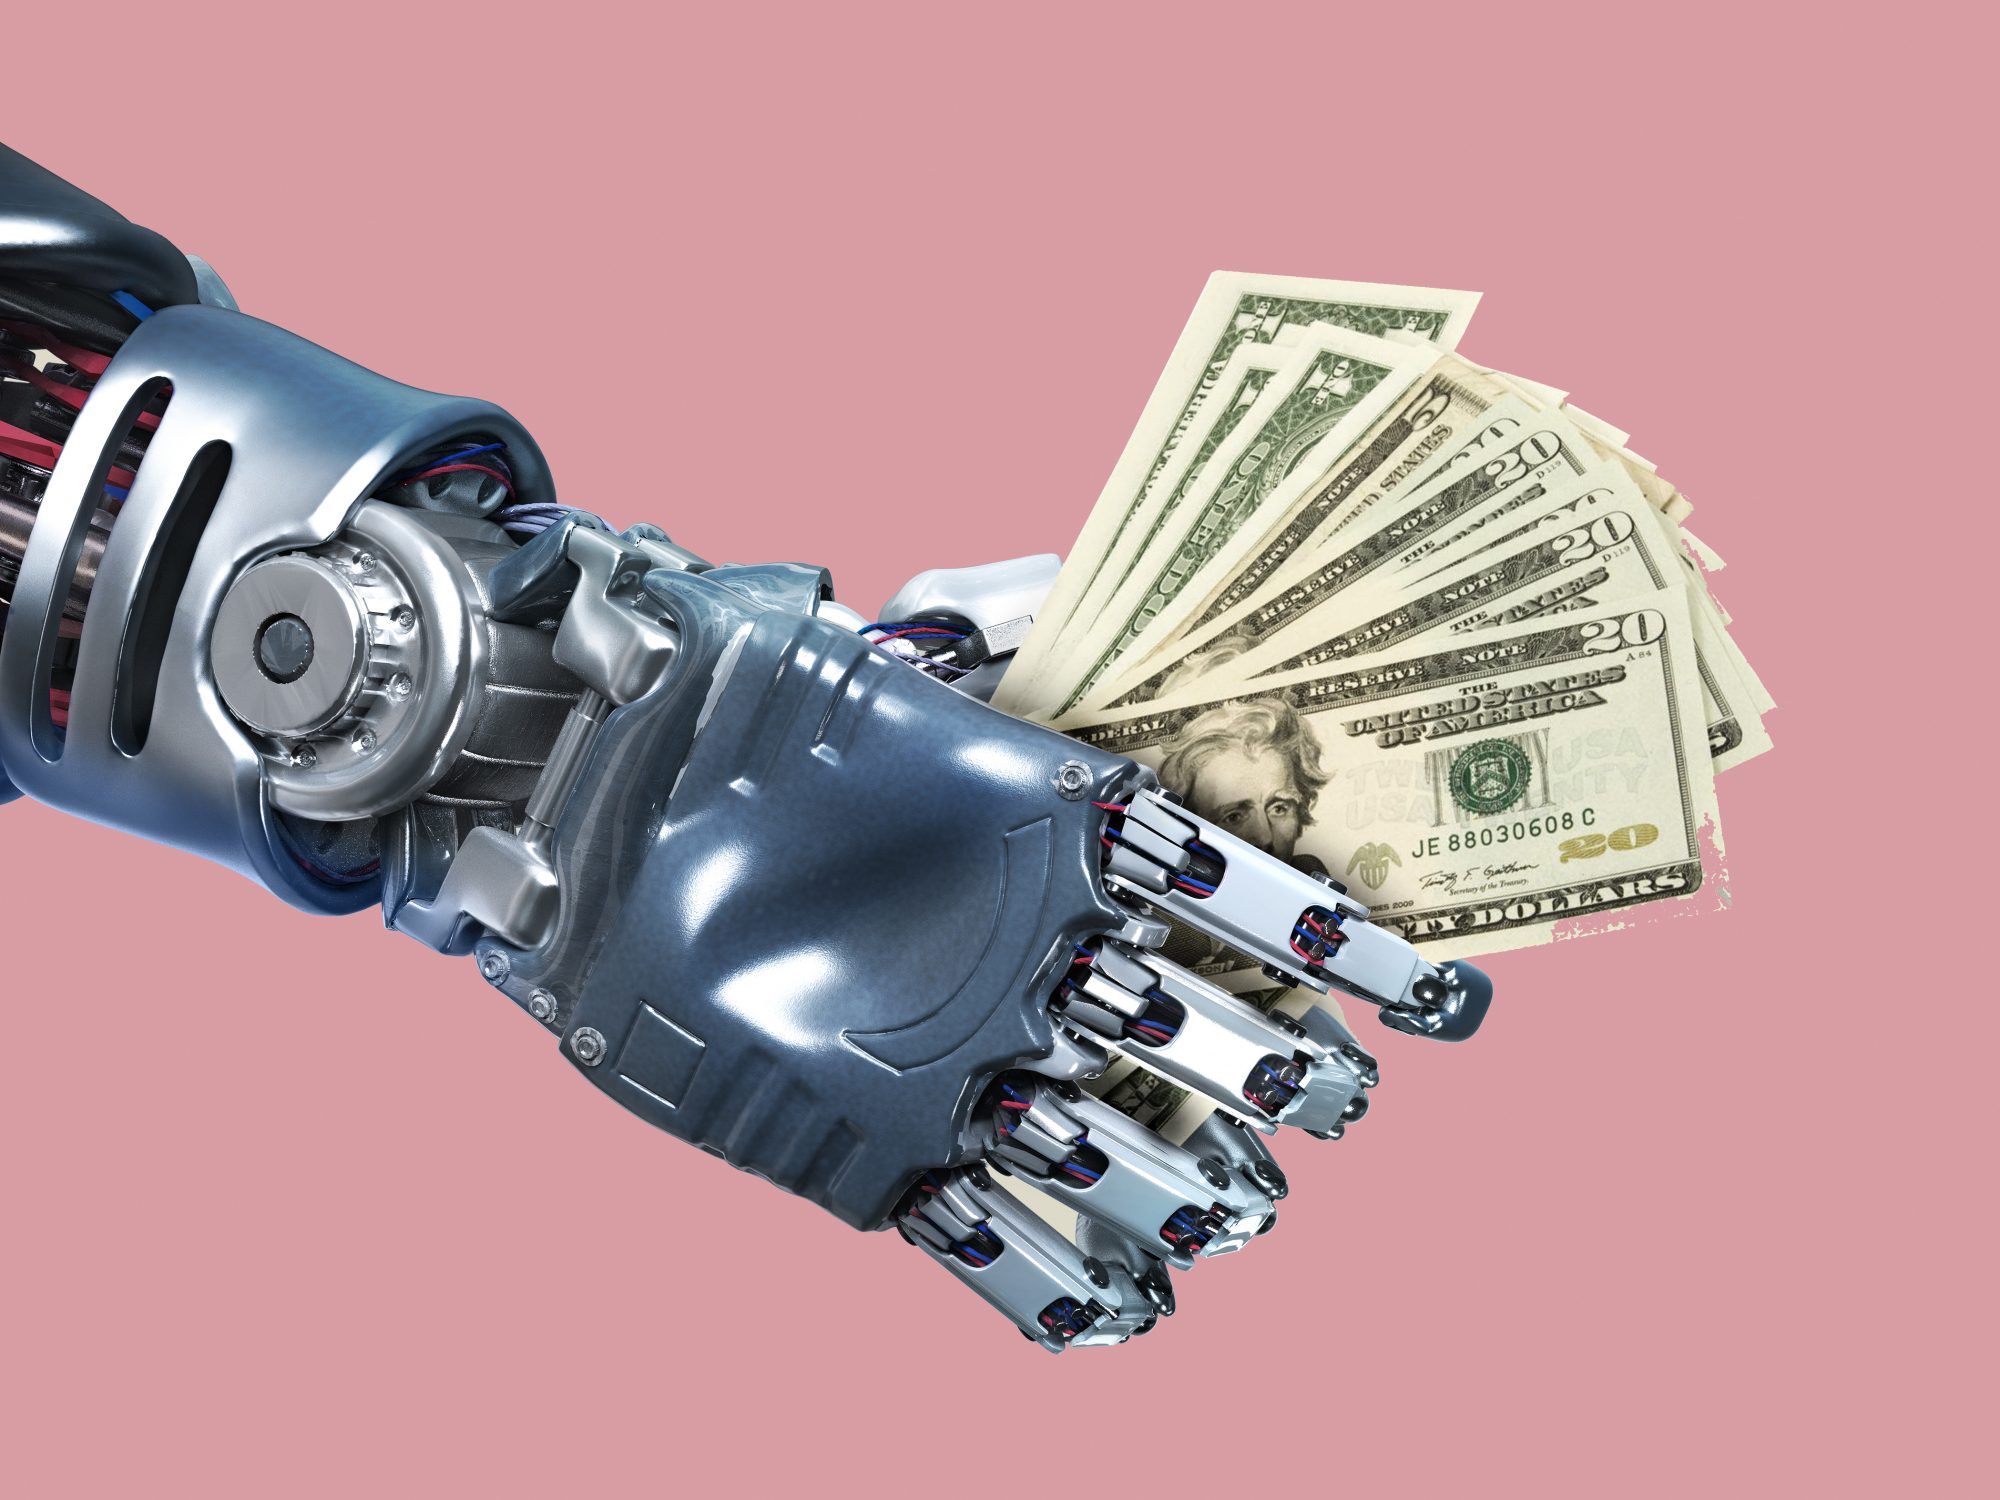 робо-съветник: ръка на робот и пари в брой